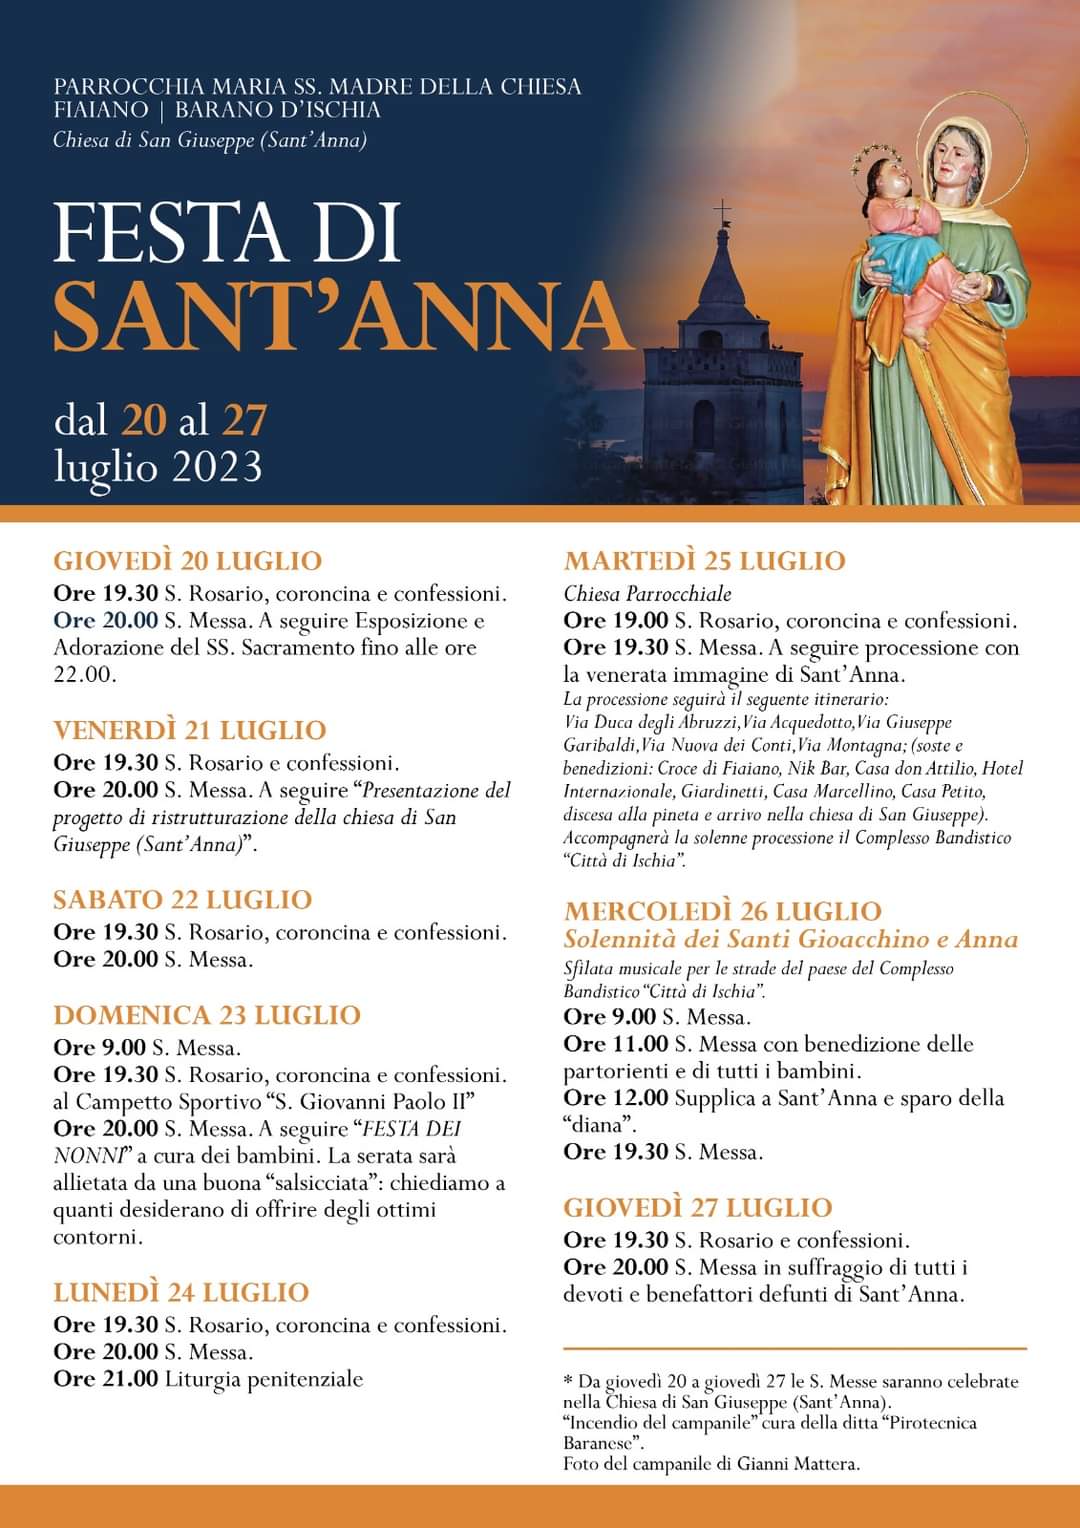 Festa di Sant'Anna: “FESTA DEI NONNI” 